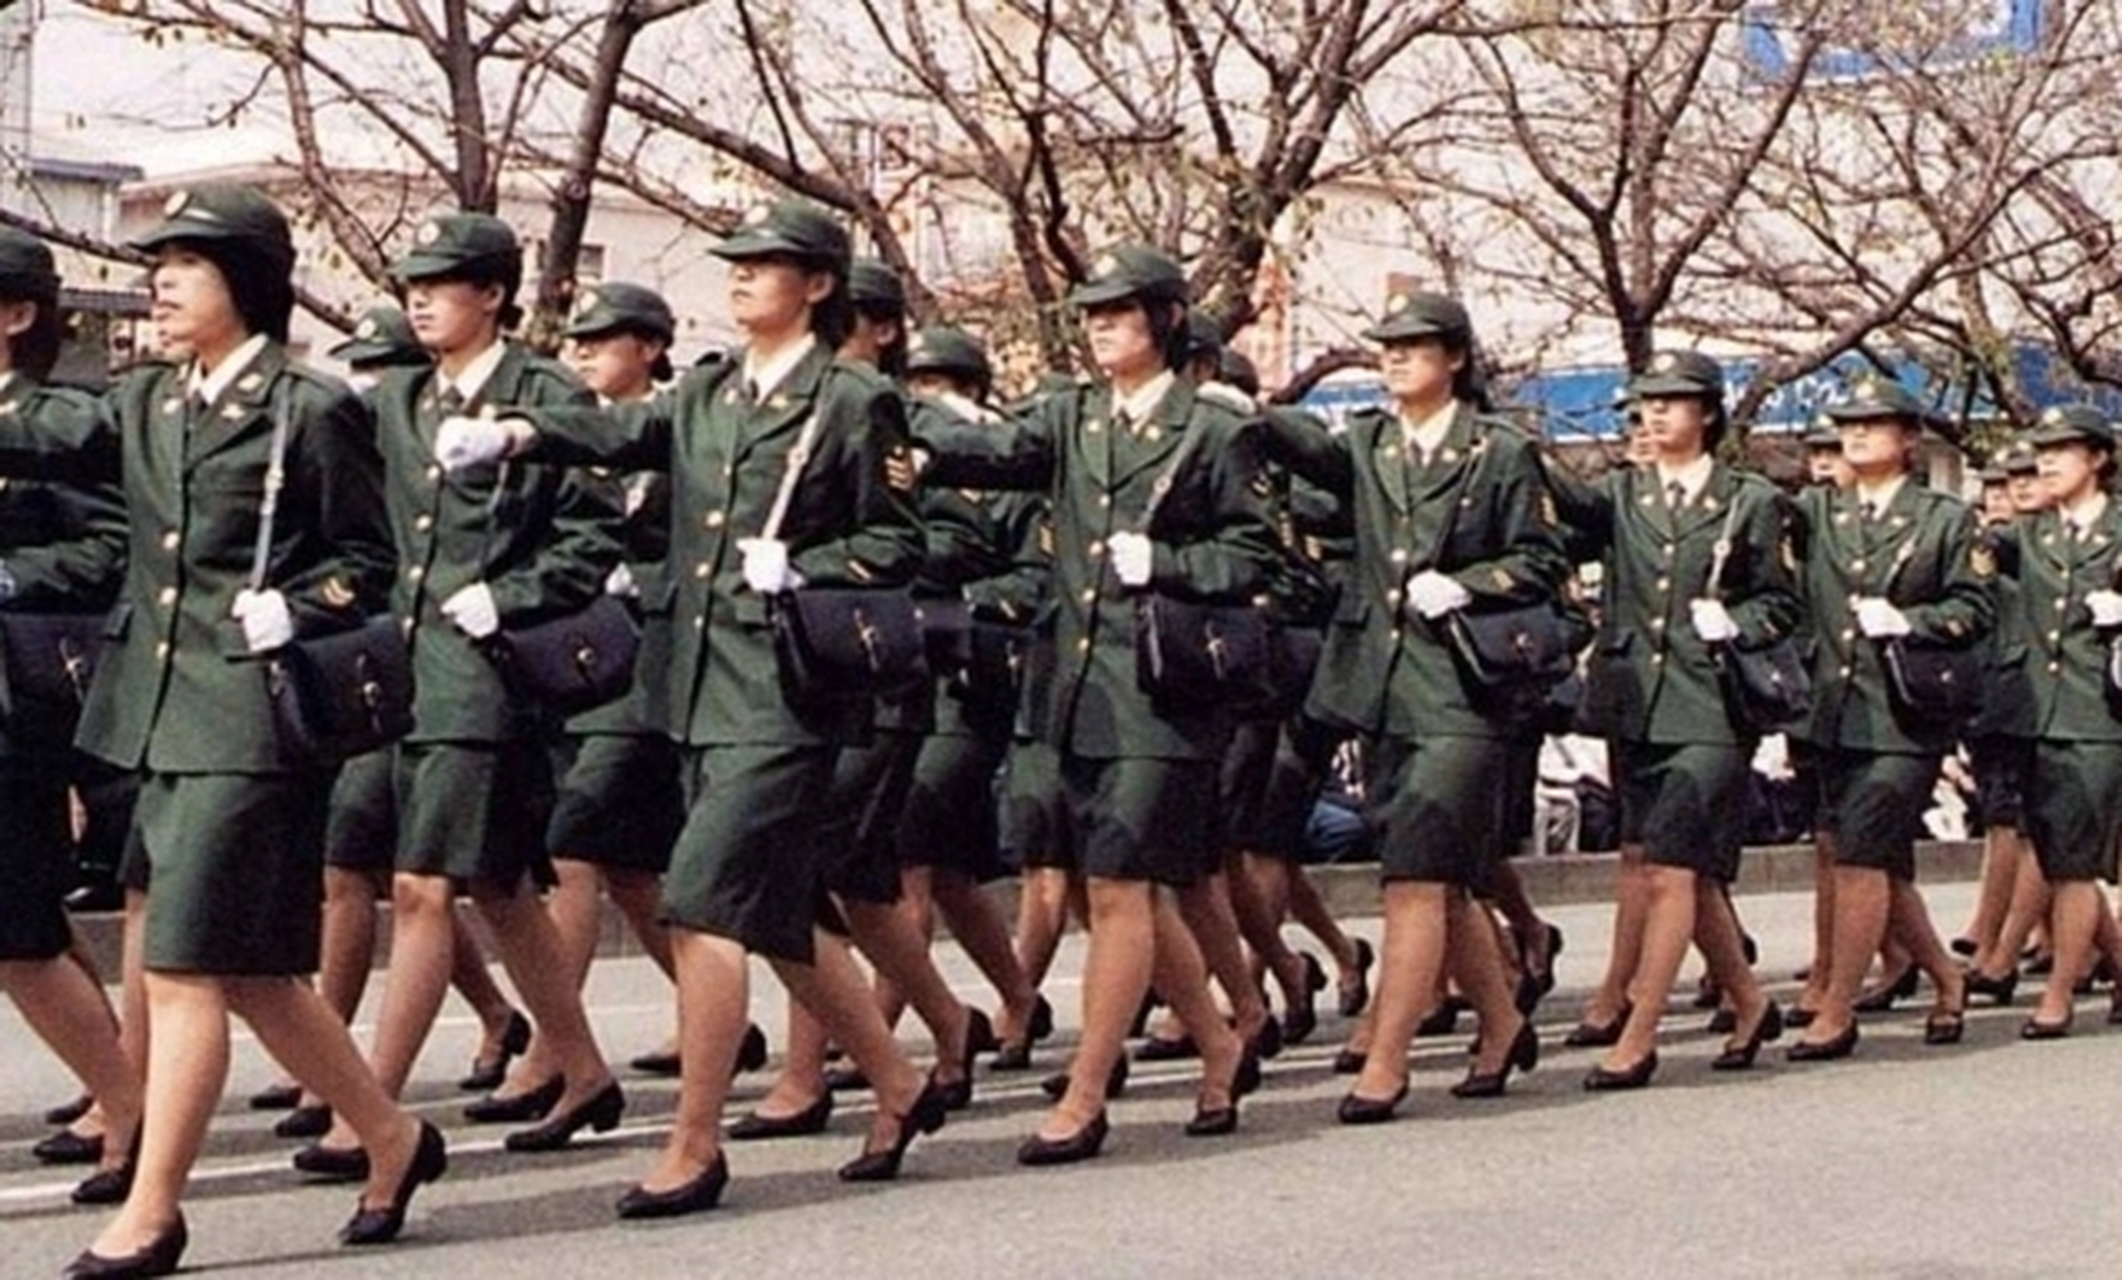 这是日本自卫队女兵在阅兵式上的照片,她们穿上军装看起来英姿飒爽